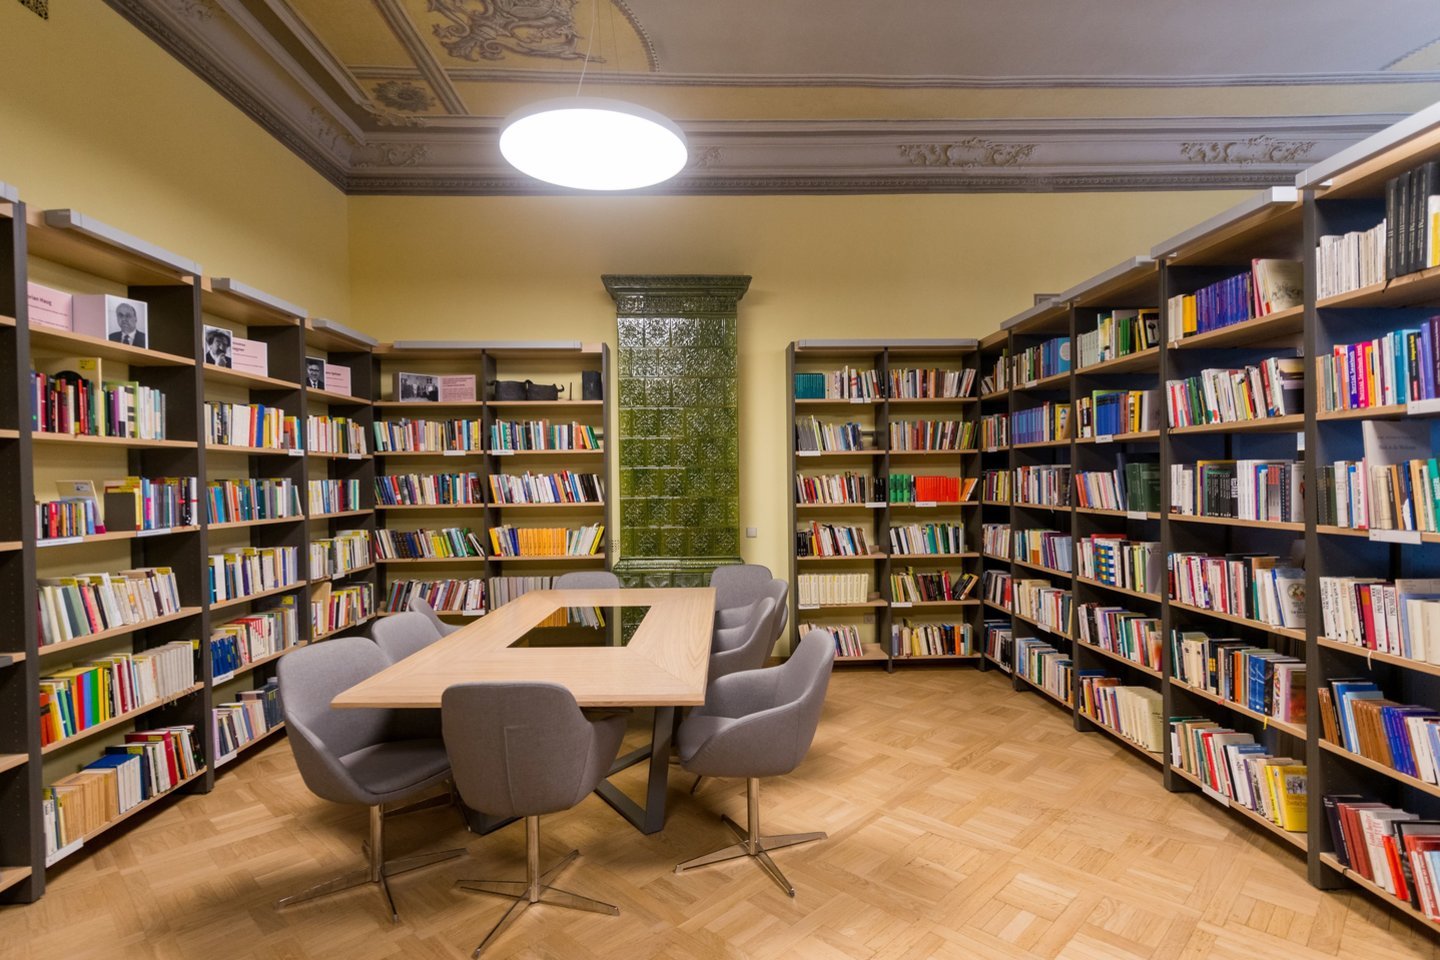  Adomo Mickevičiaus viešoji biblioteka.<br> J.Stacevičiaus nuotr.